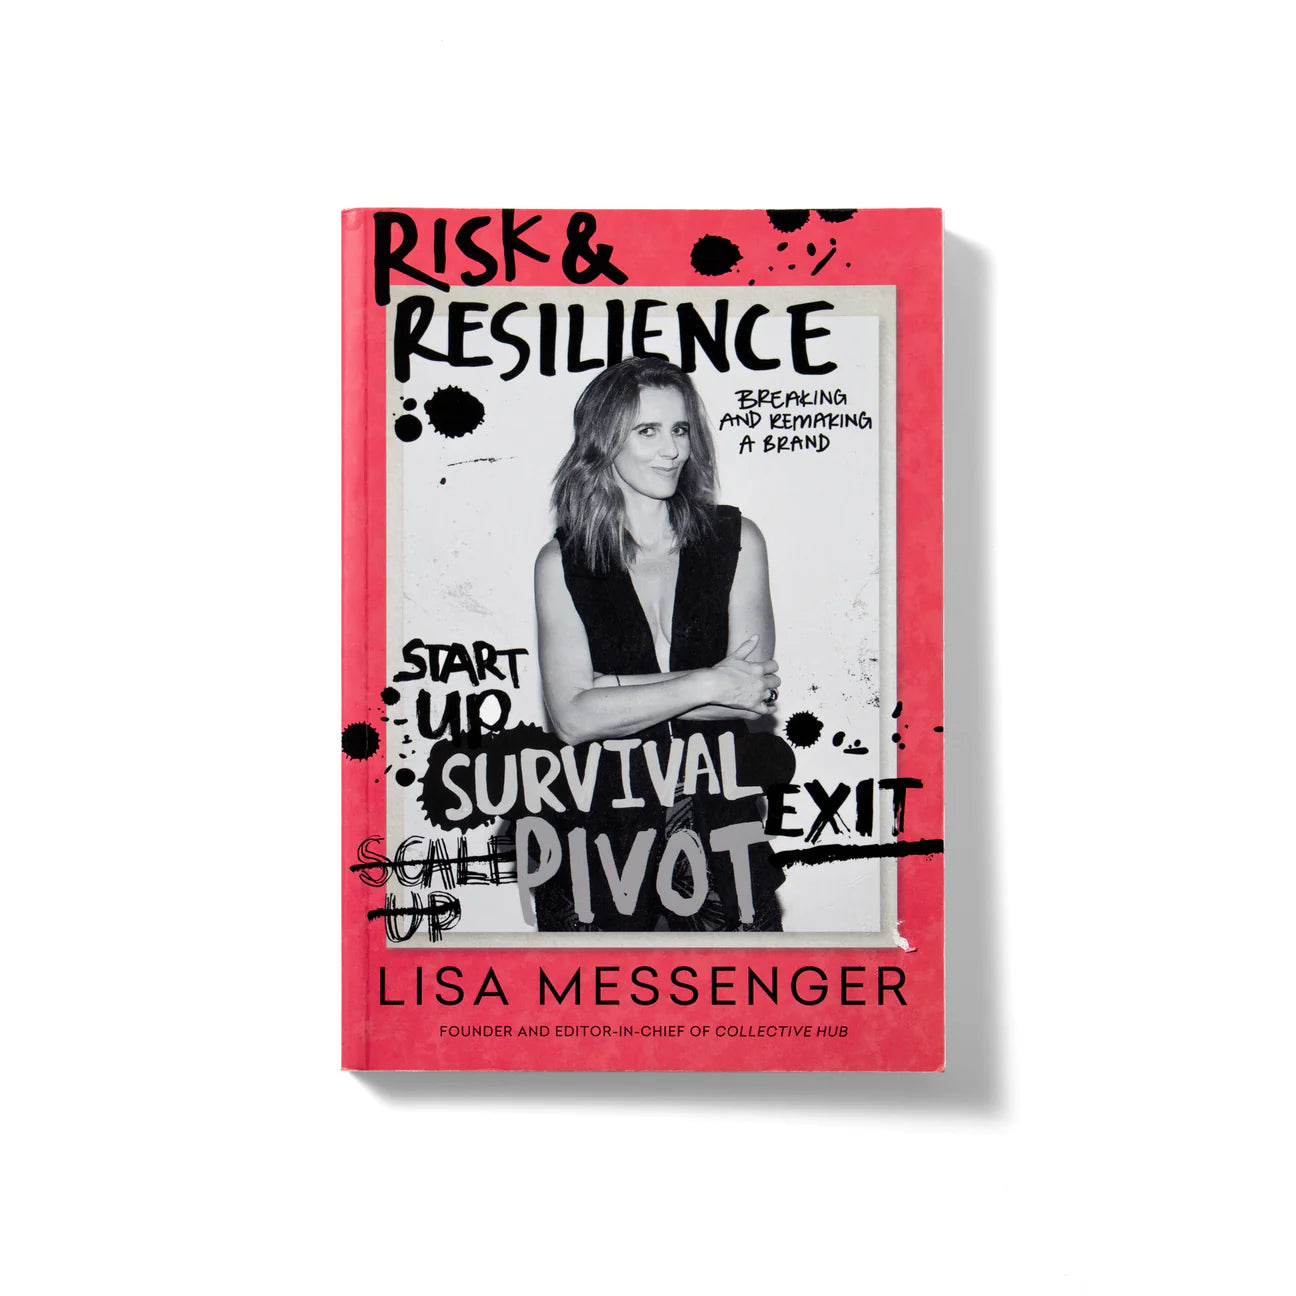 Risk & Resilience Lisa Messenger - Collective Hub